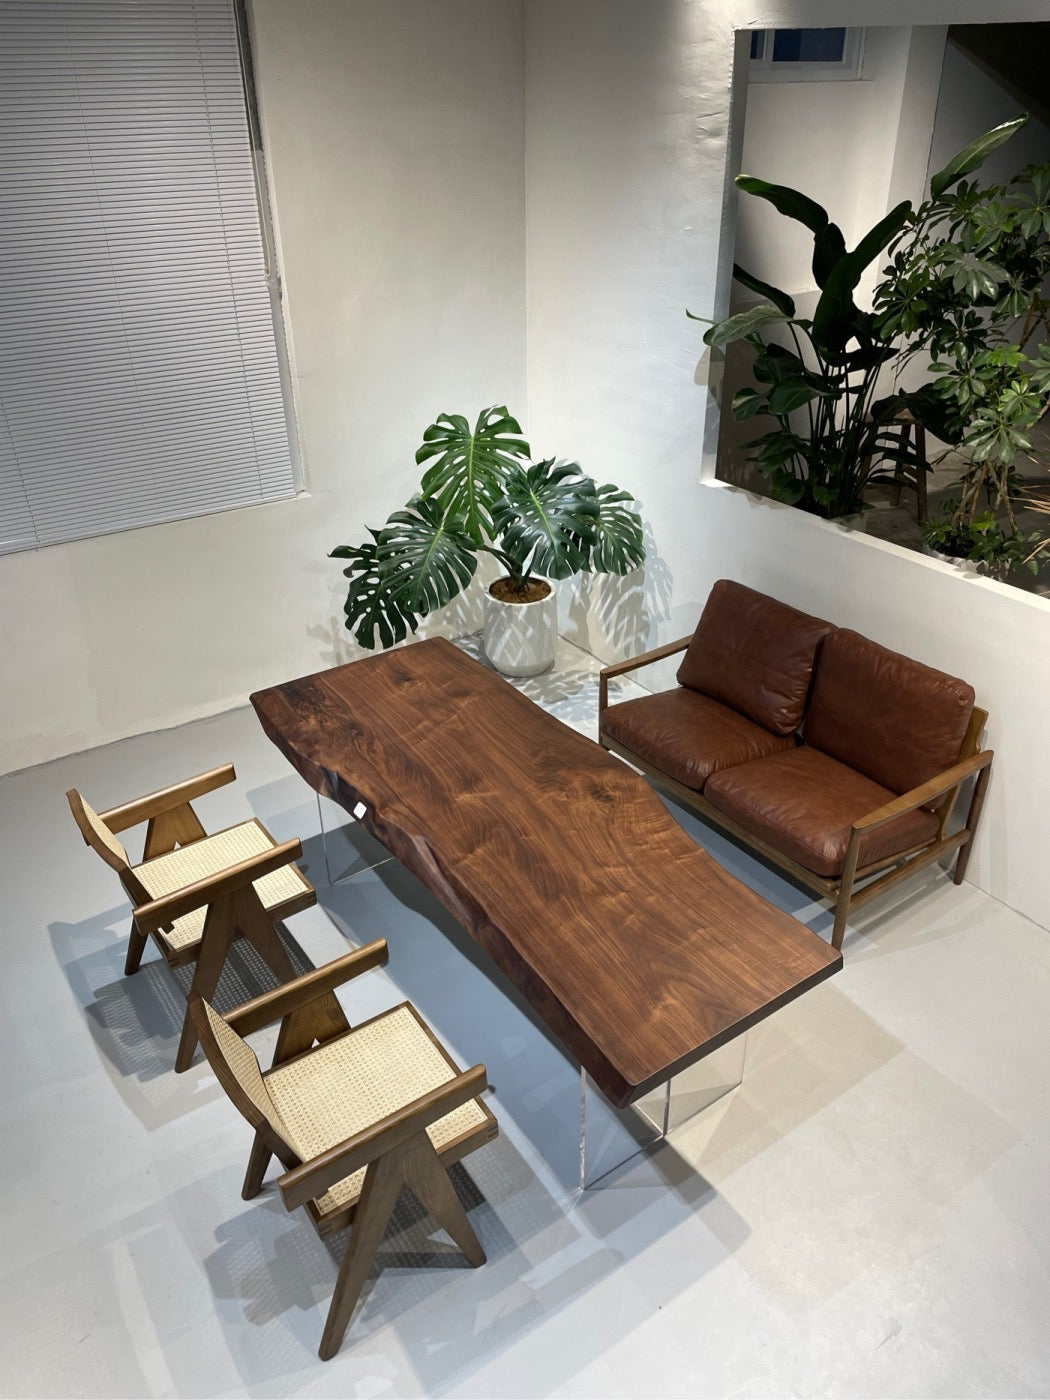 Schwarze amerikanische Walnussplatte, Esstisch aus Holzplatte, Tisch aus Baumplatte